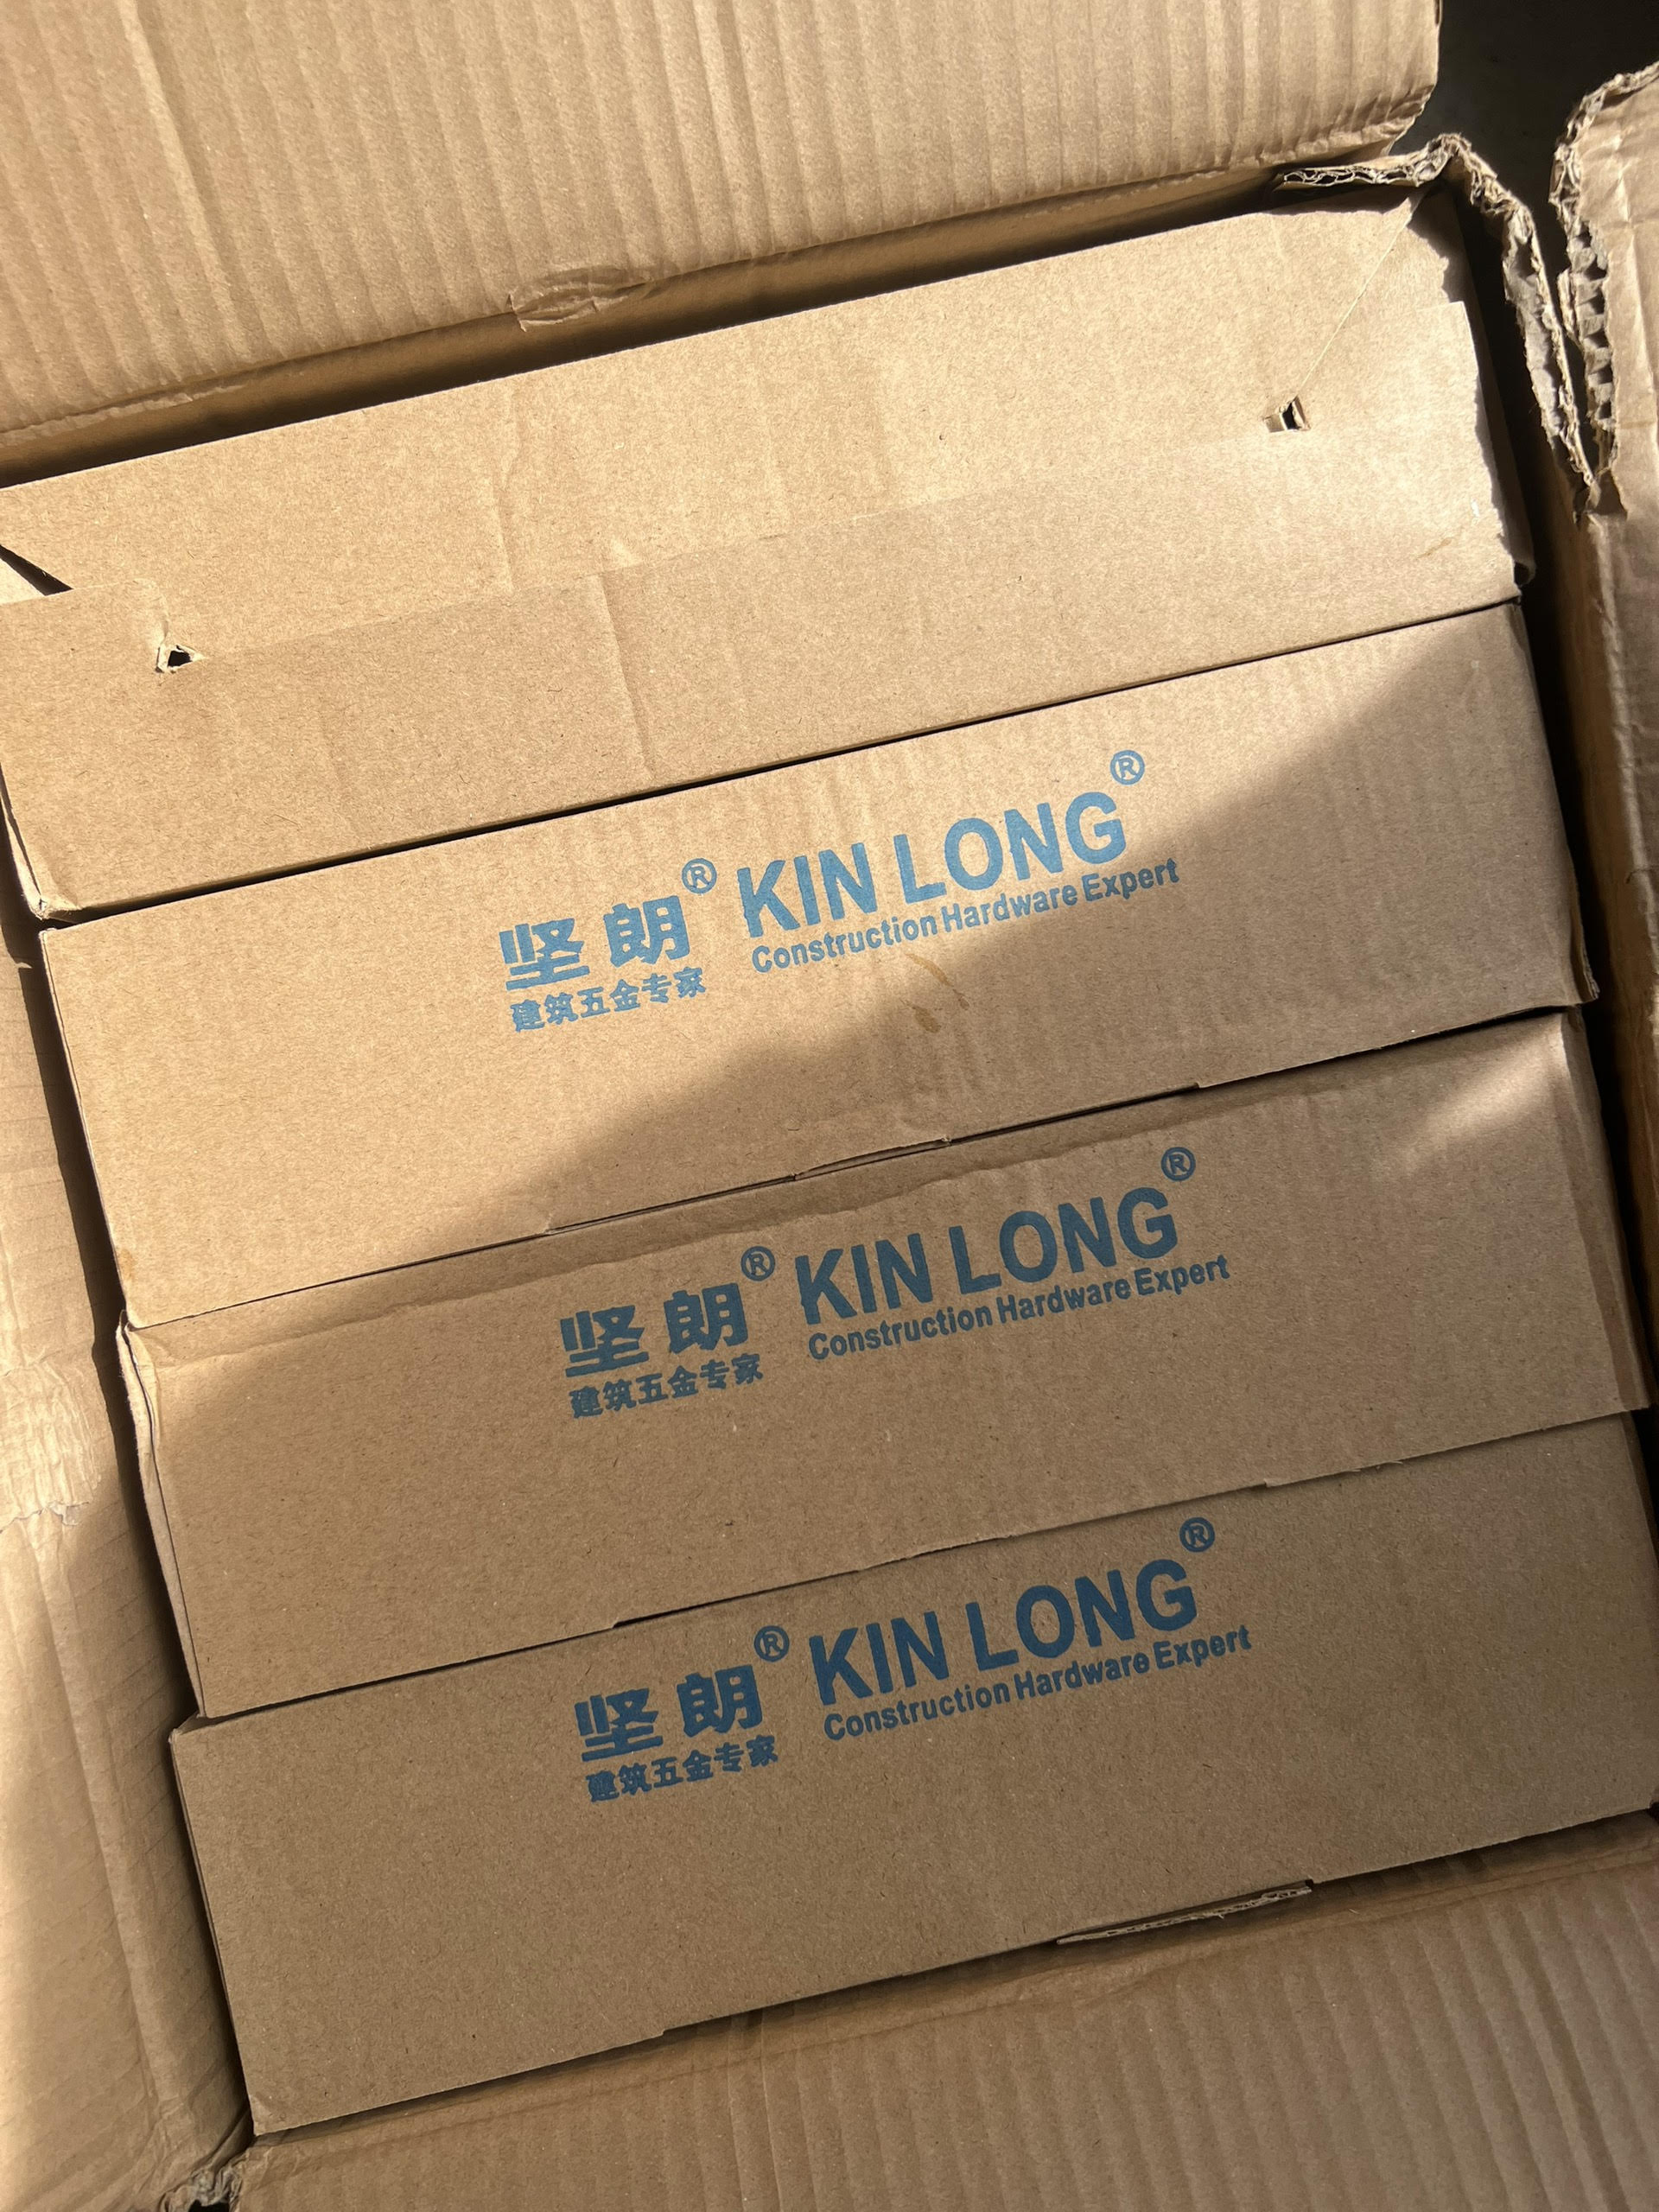 Hà Nội: Phát hiện hàng nghìn sản phẩm giả mạo nhãn hiệu Kin Long